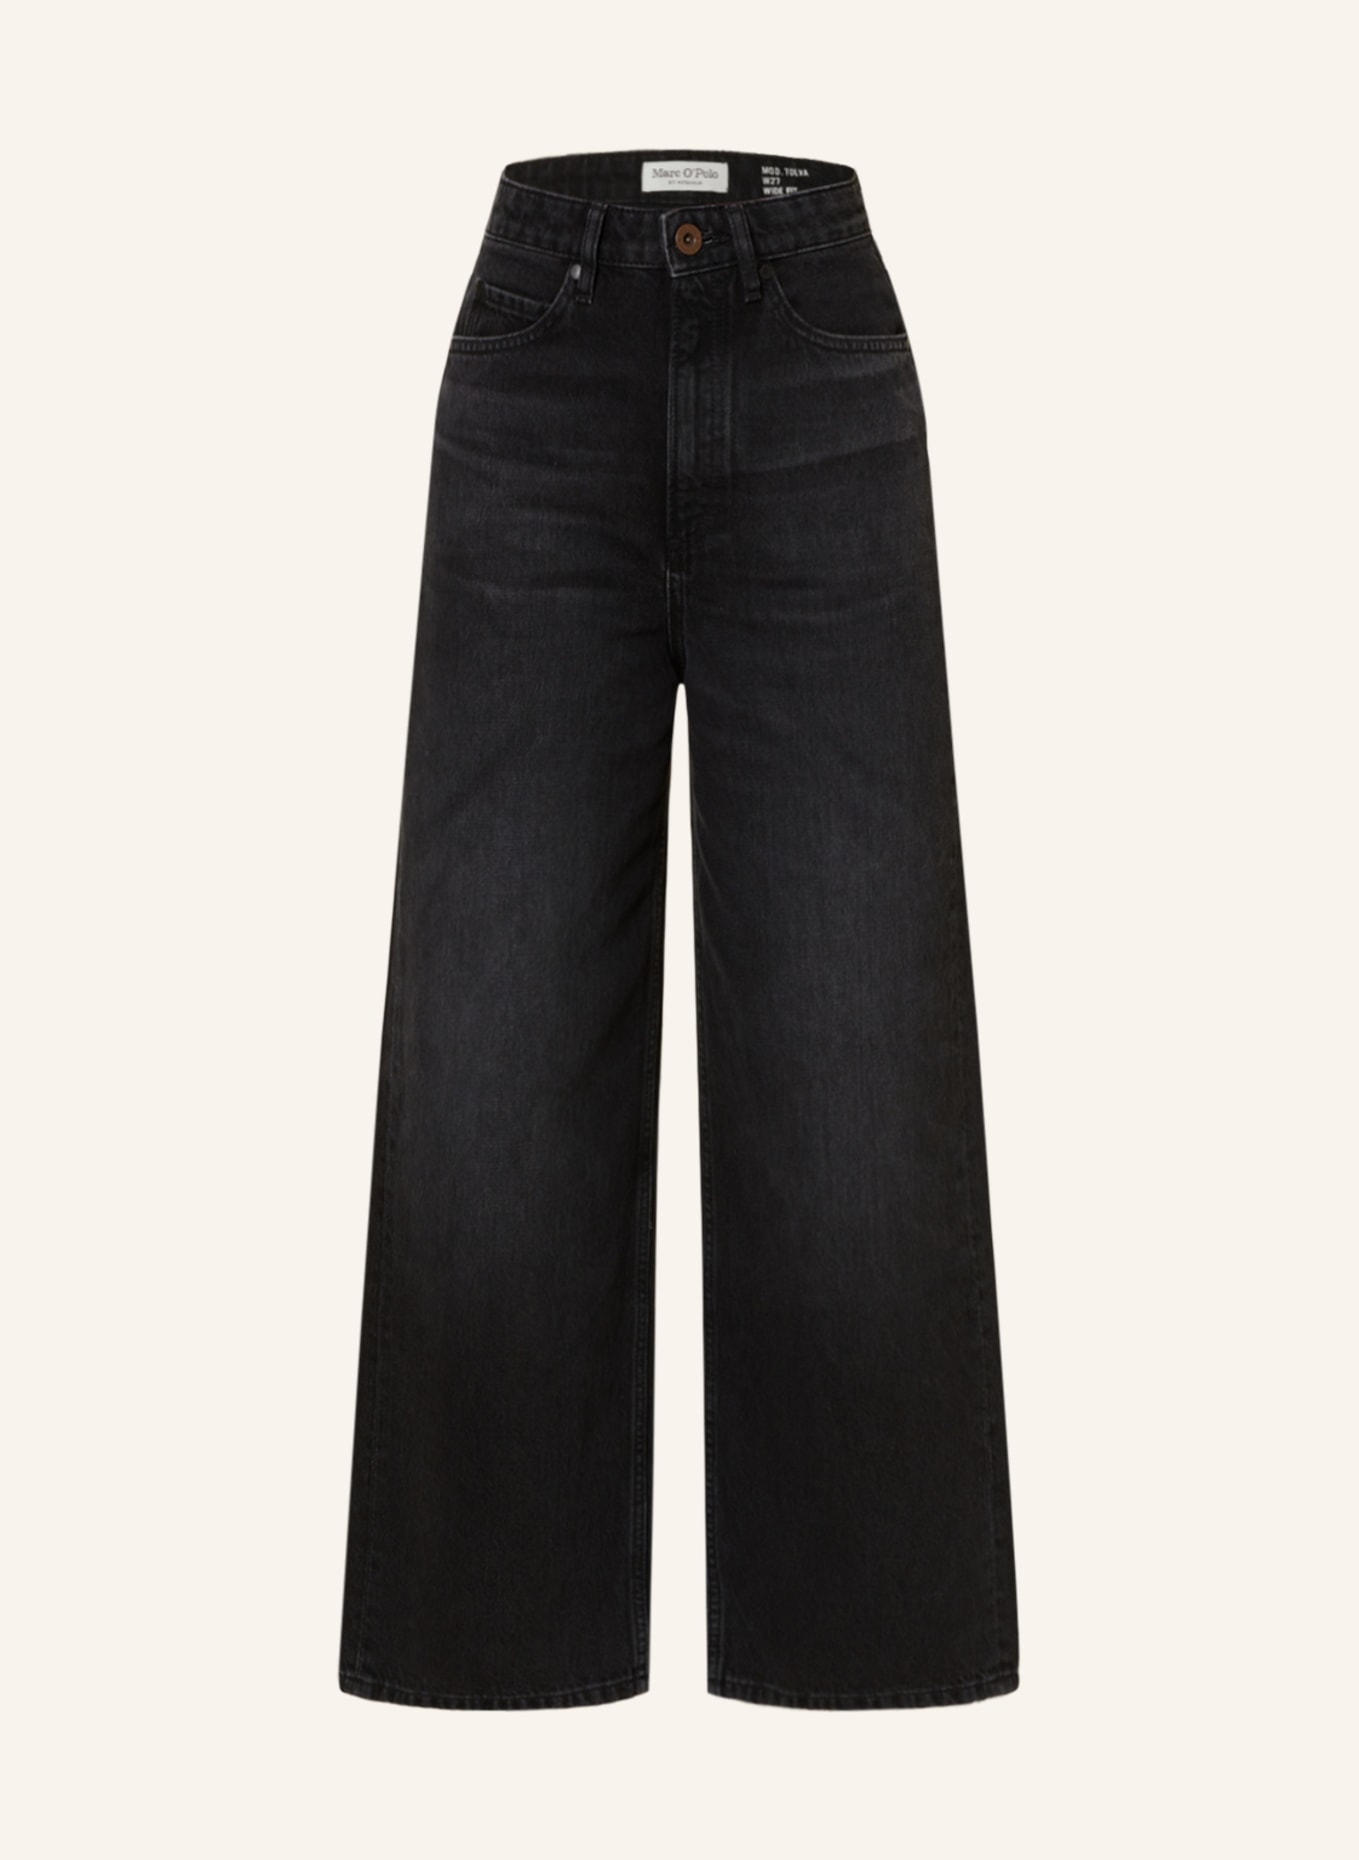 Marc O'Polo 7/8 jeans, Color: 073 Authentic black denim wash (Image 1)